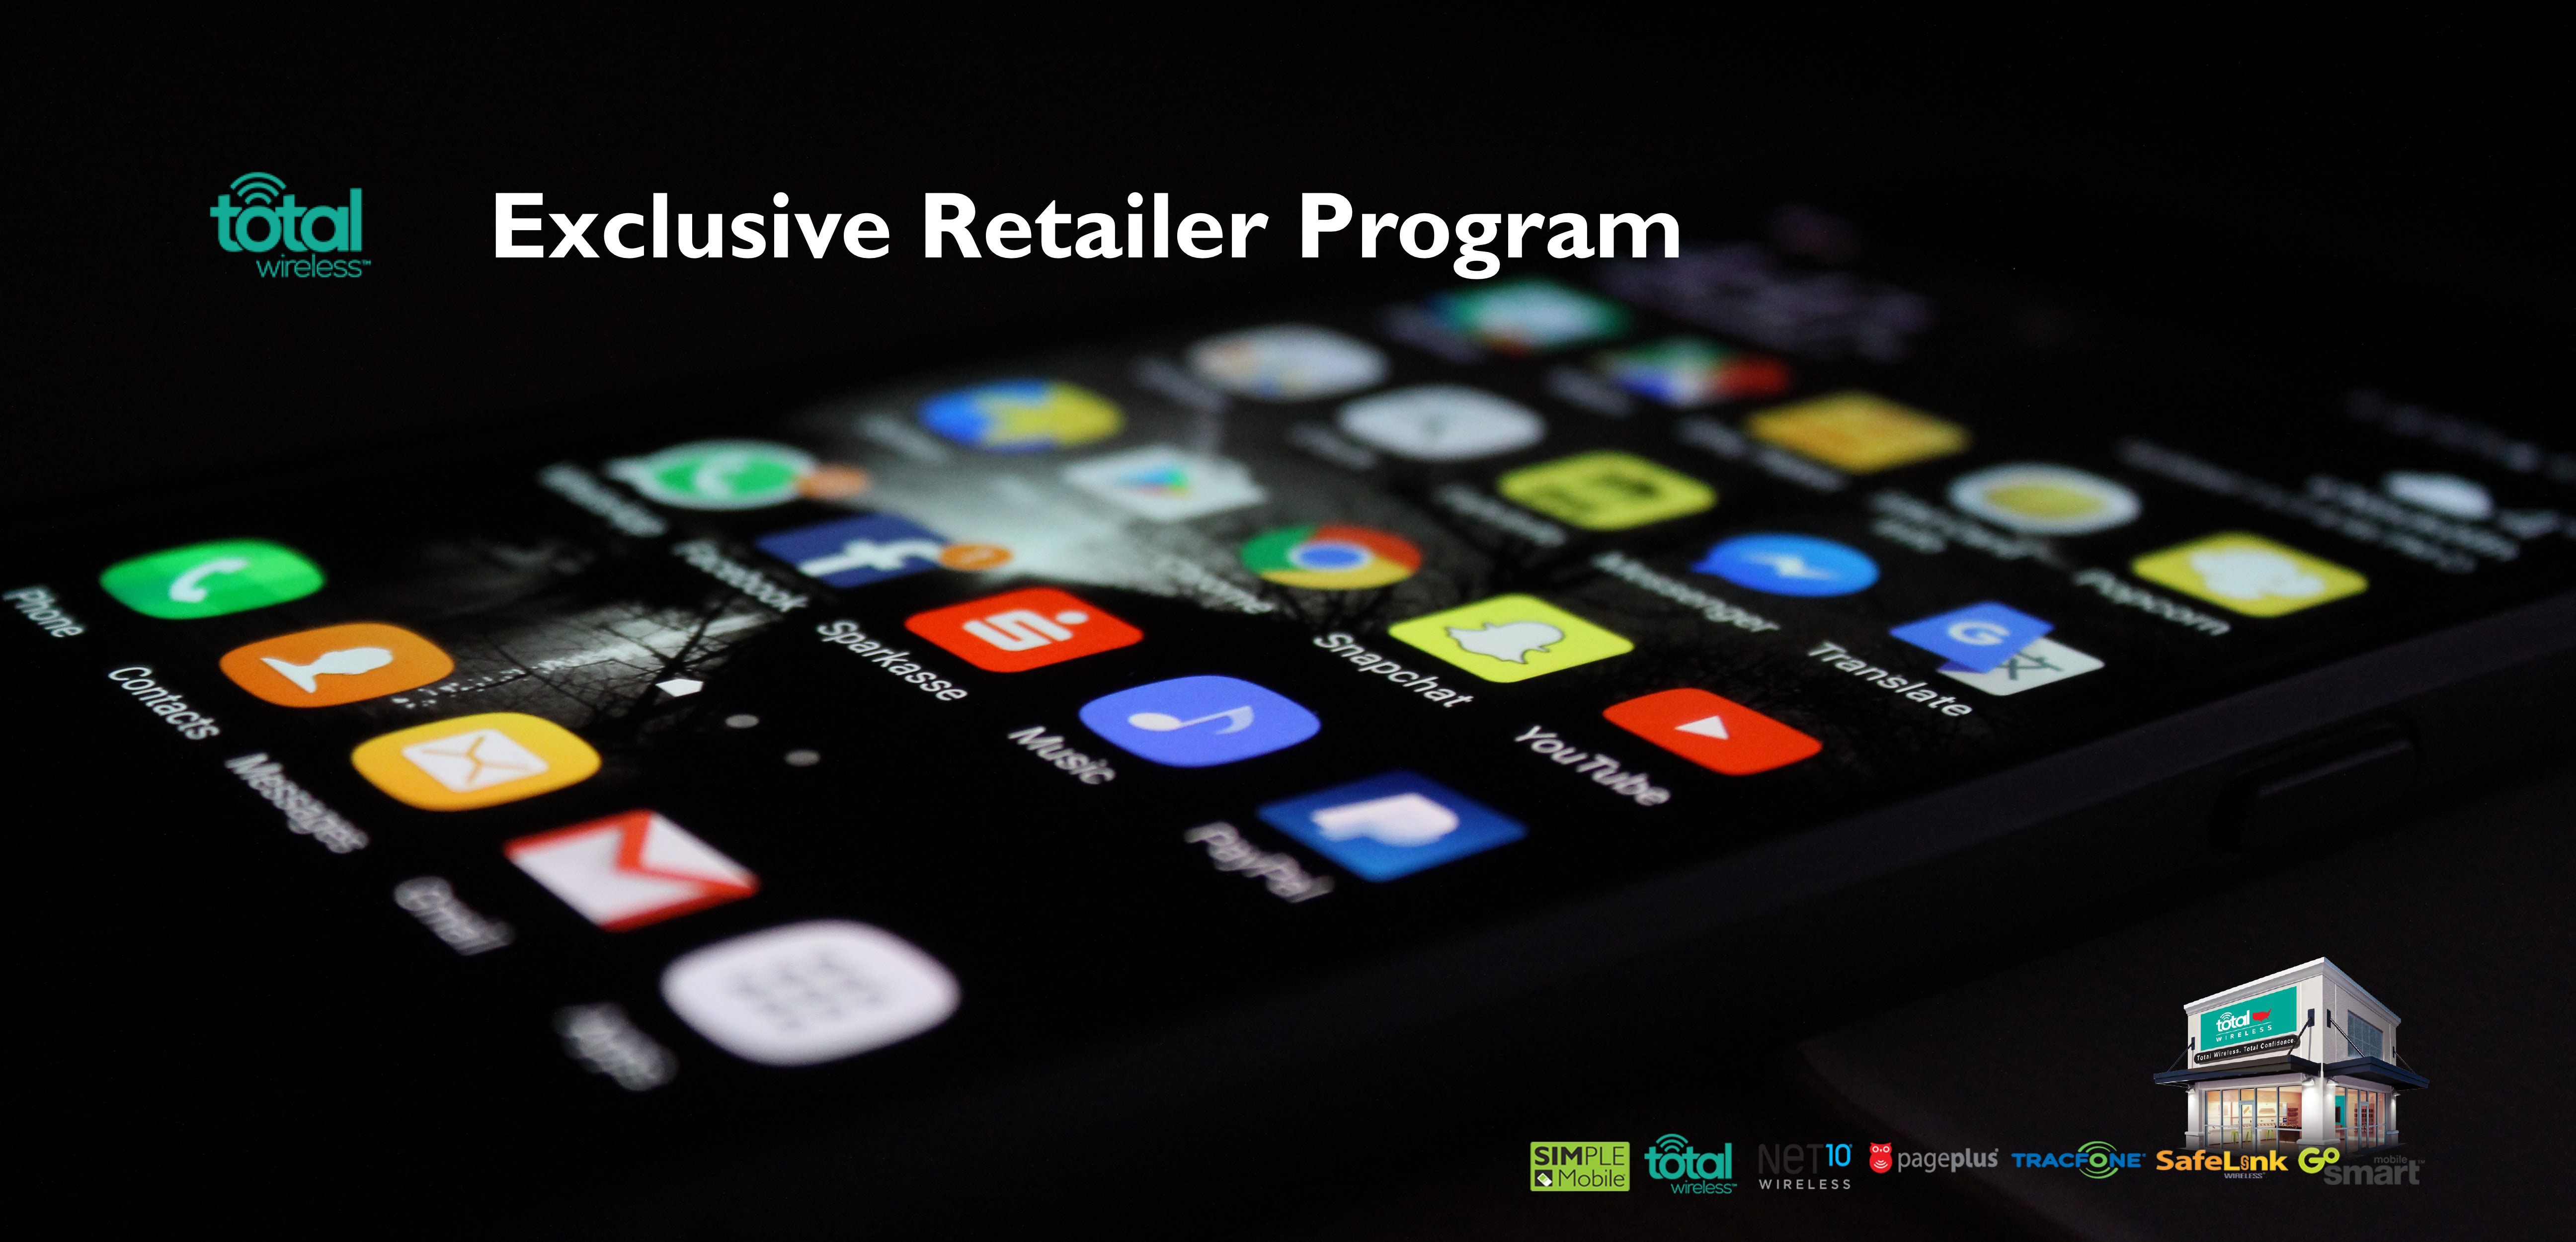 Total Wireless Exclusive Retailer Program1